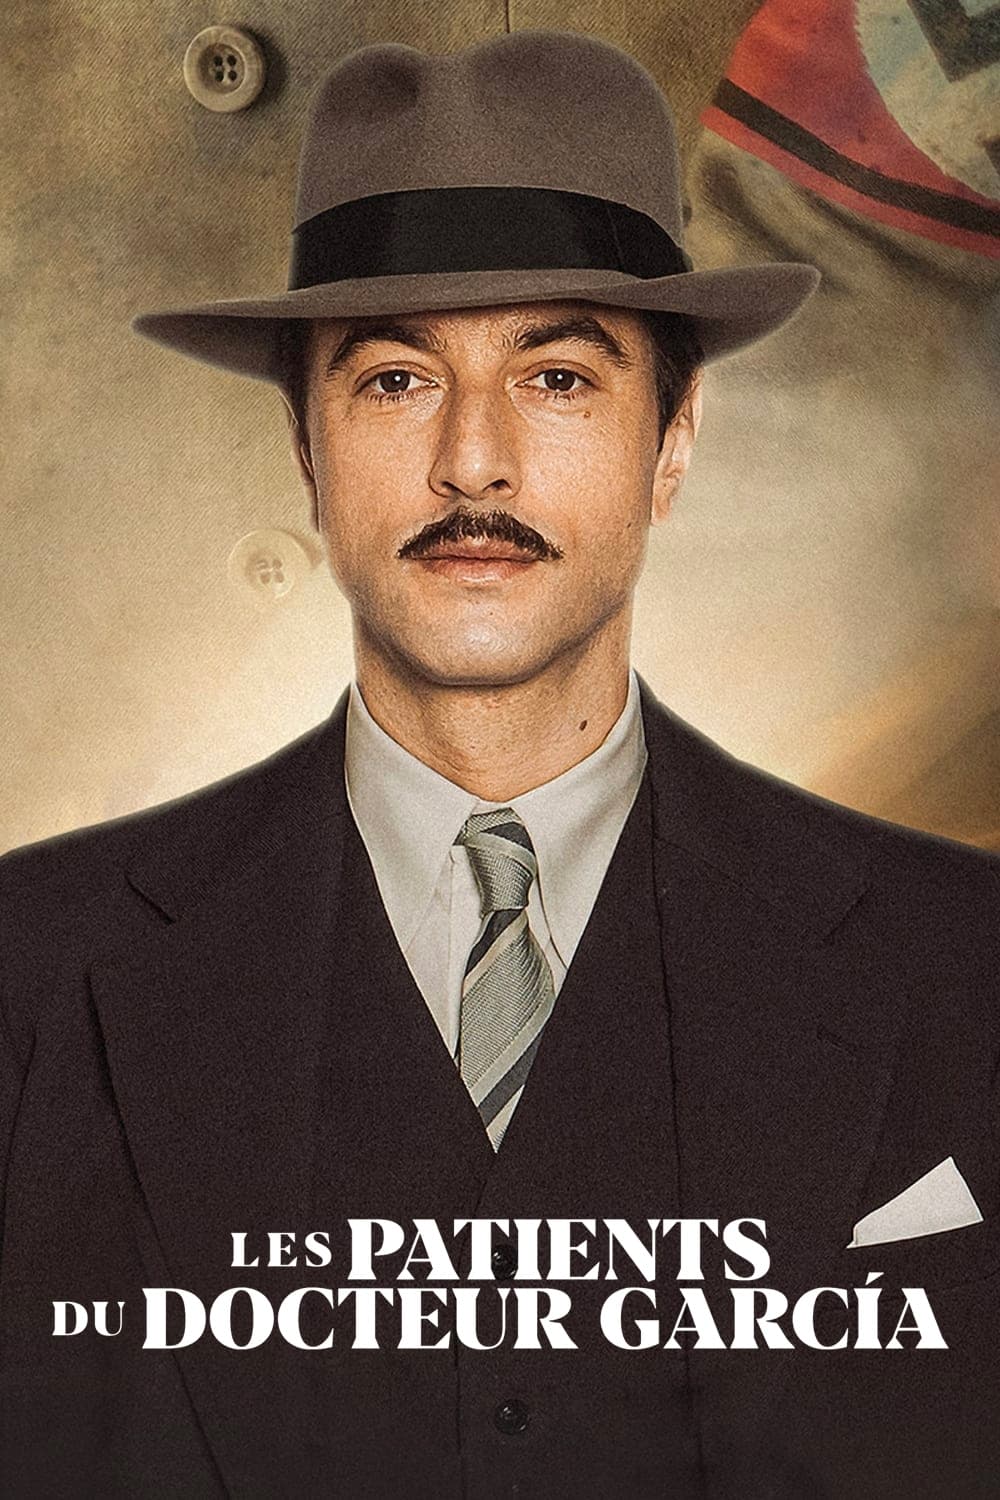 Les saisons de Les patients du Docteur Garcia sont-elles disponibles sur Netflix ou autre ?